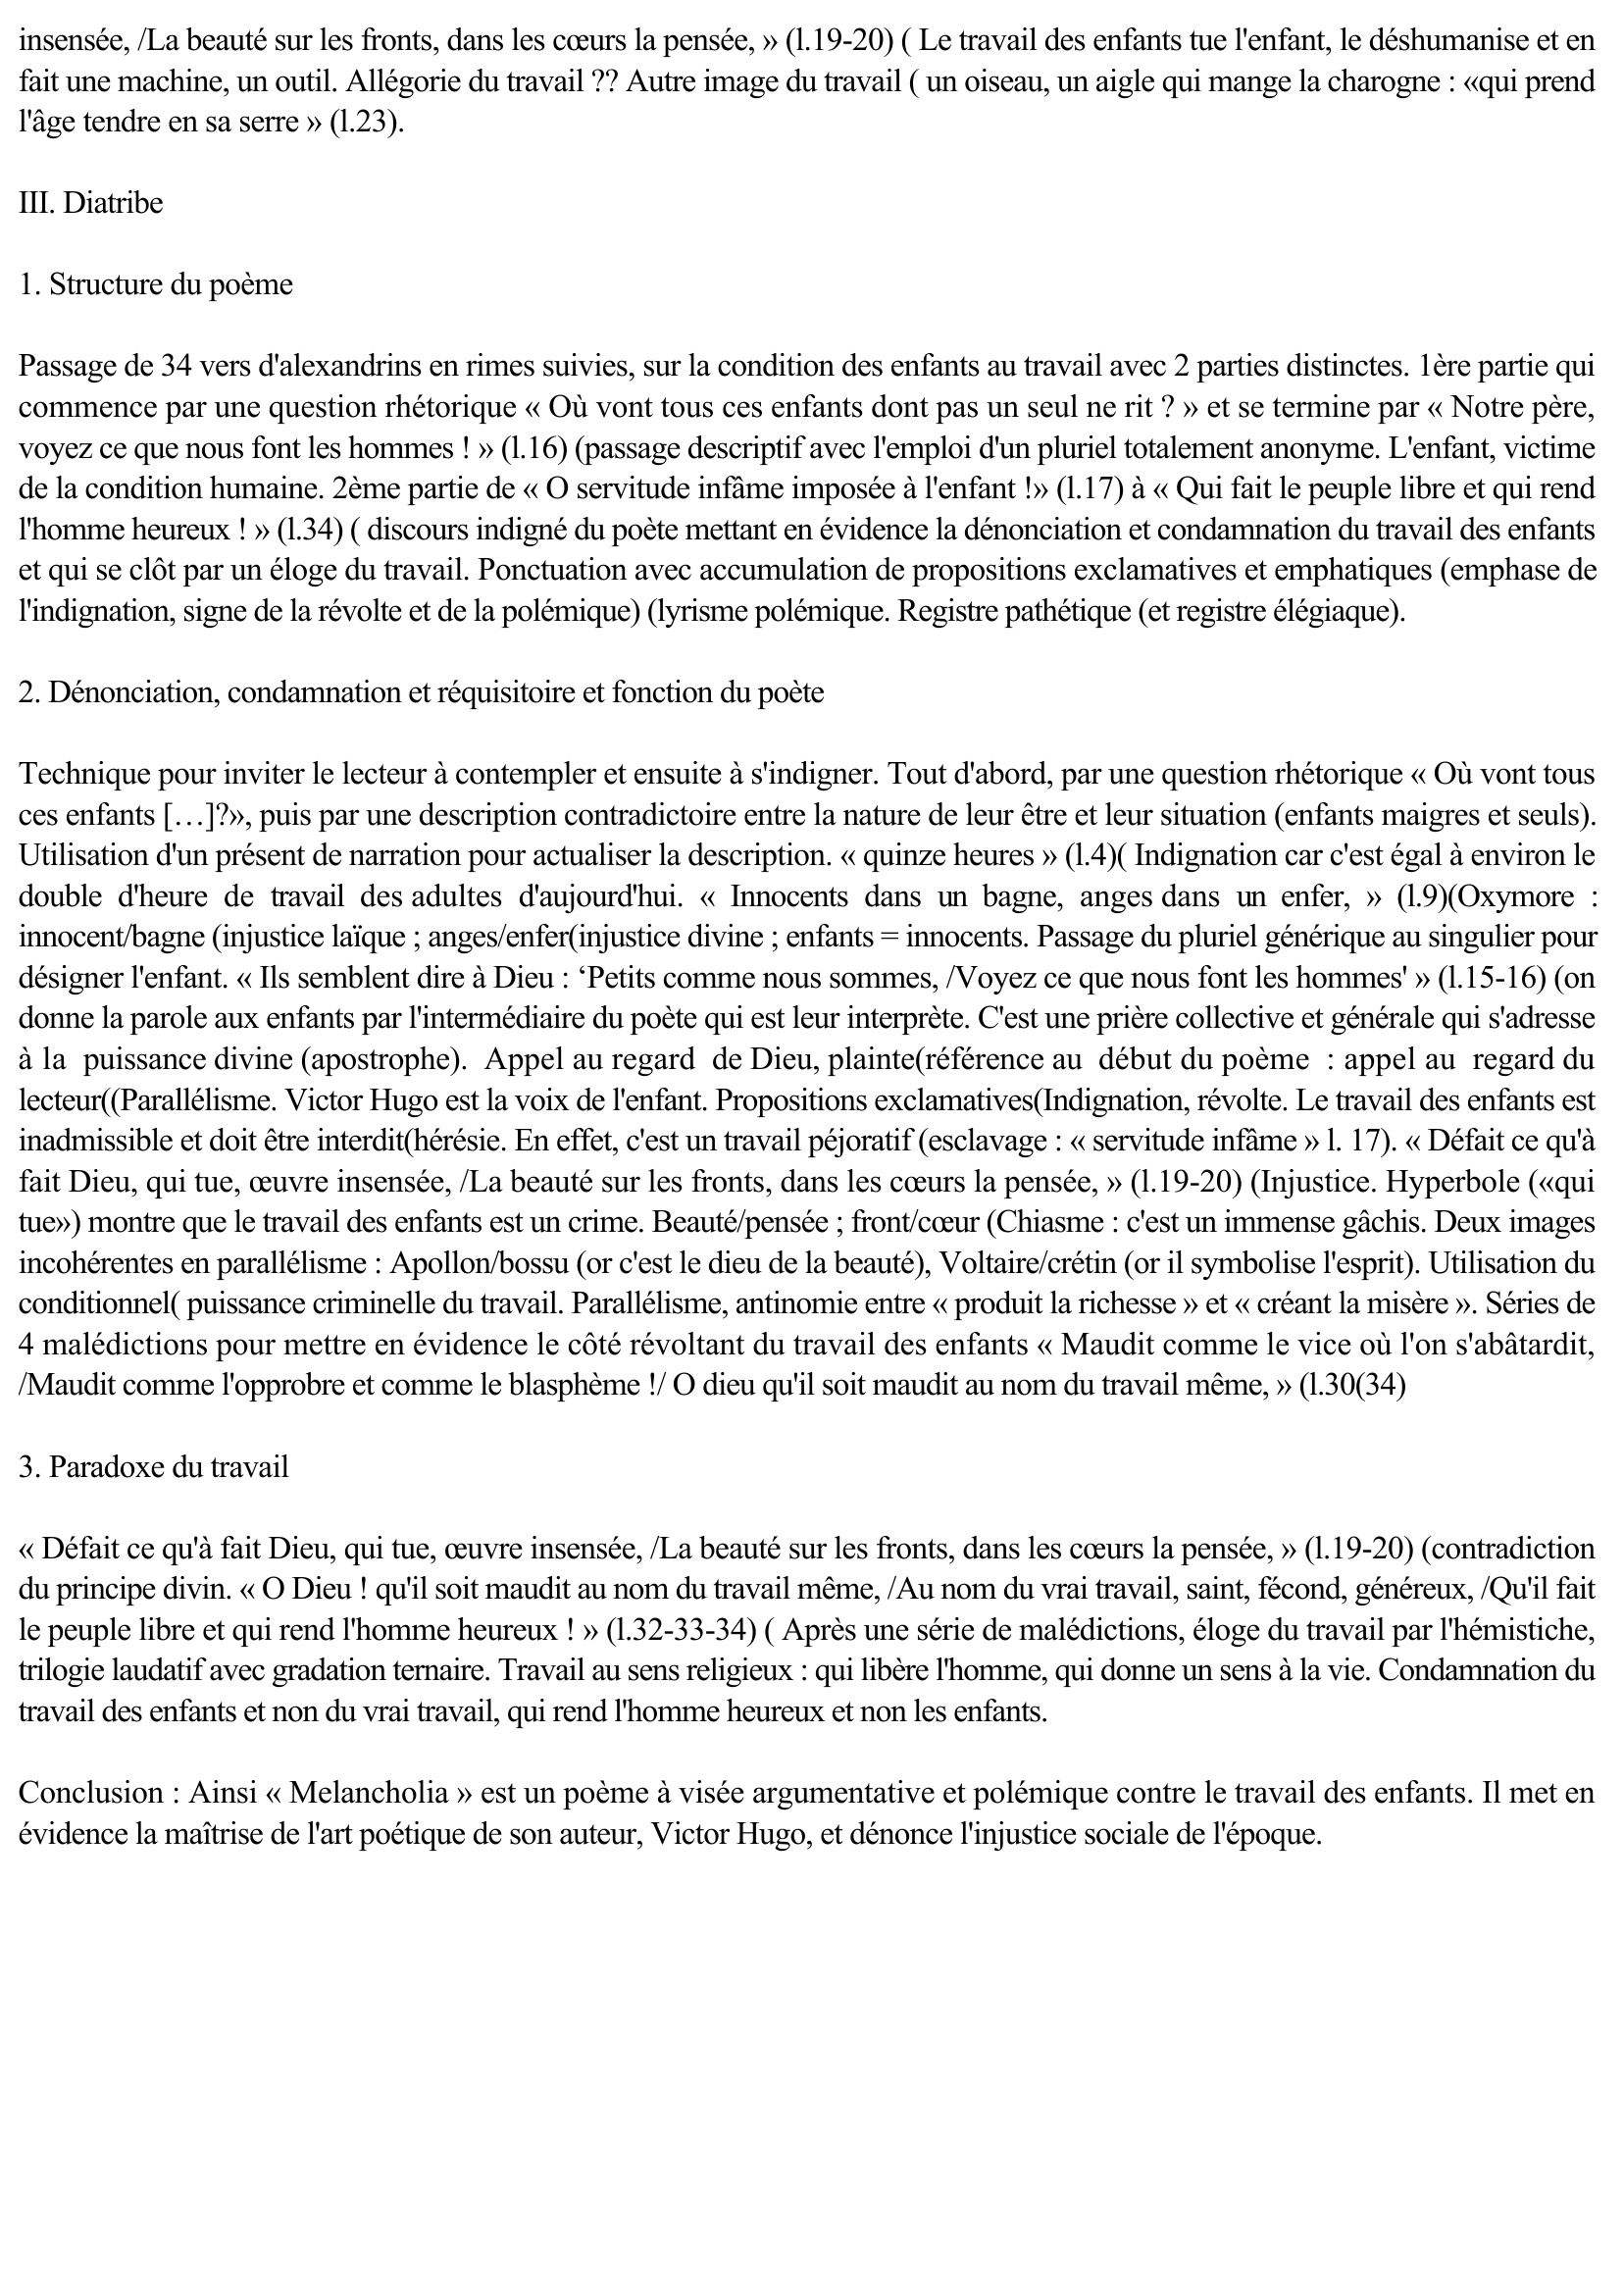 Prévisualisation du document Victor Hugo, « Melancholia », Les Contemplations, Autrefois, III, 2